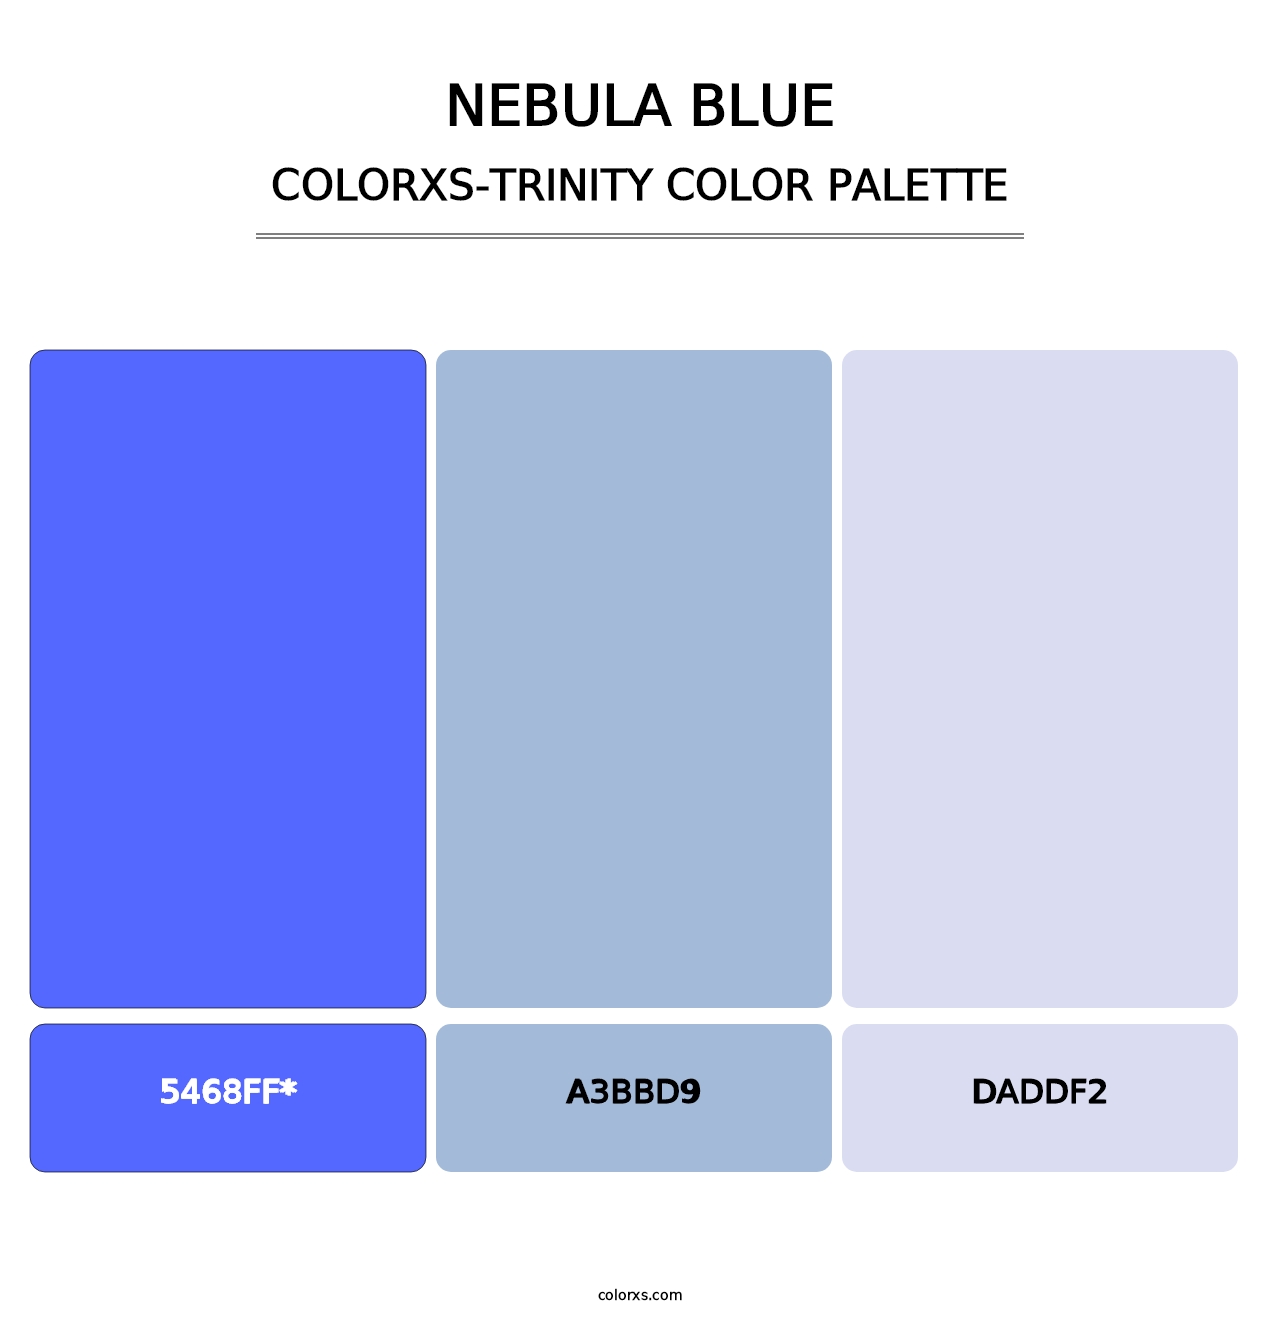 Nebula Blue - Colorxs Trinity Palette